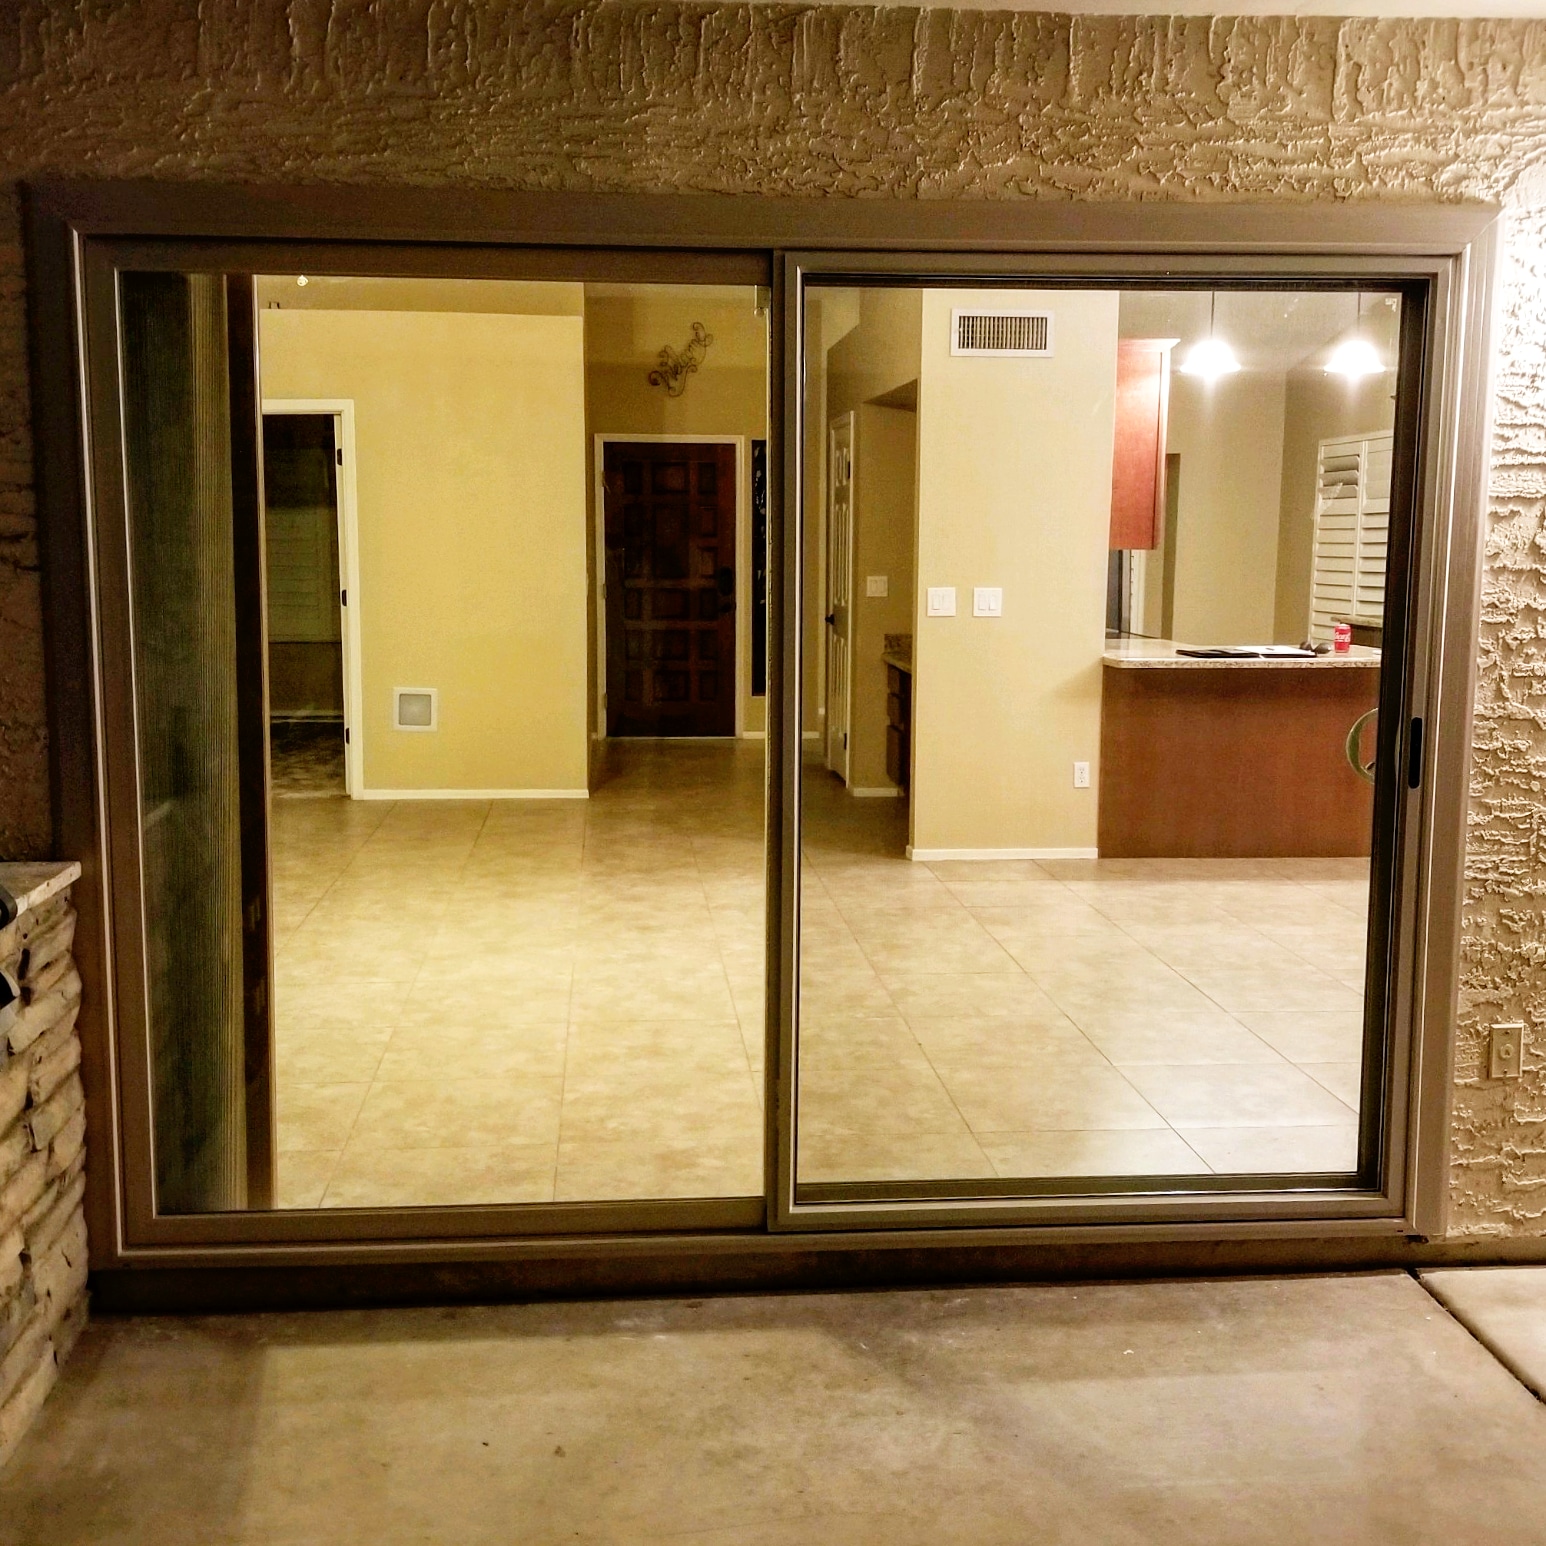 Arizona Window and Door in Scottsdale and Tucson showing back sliding door